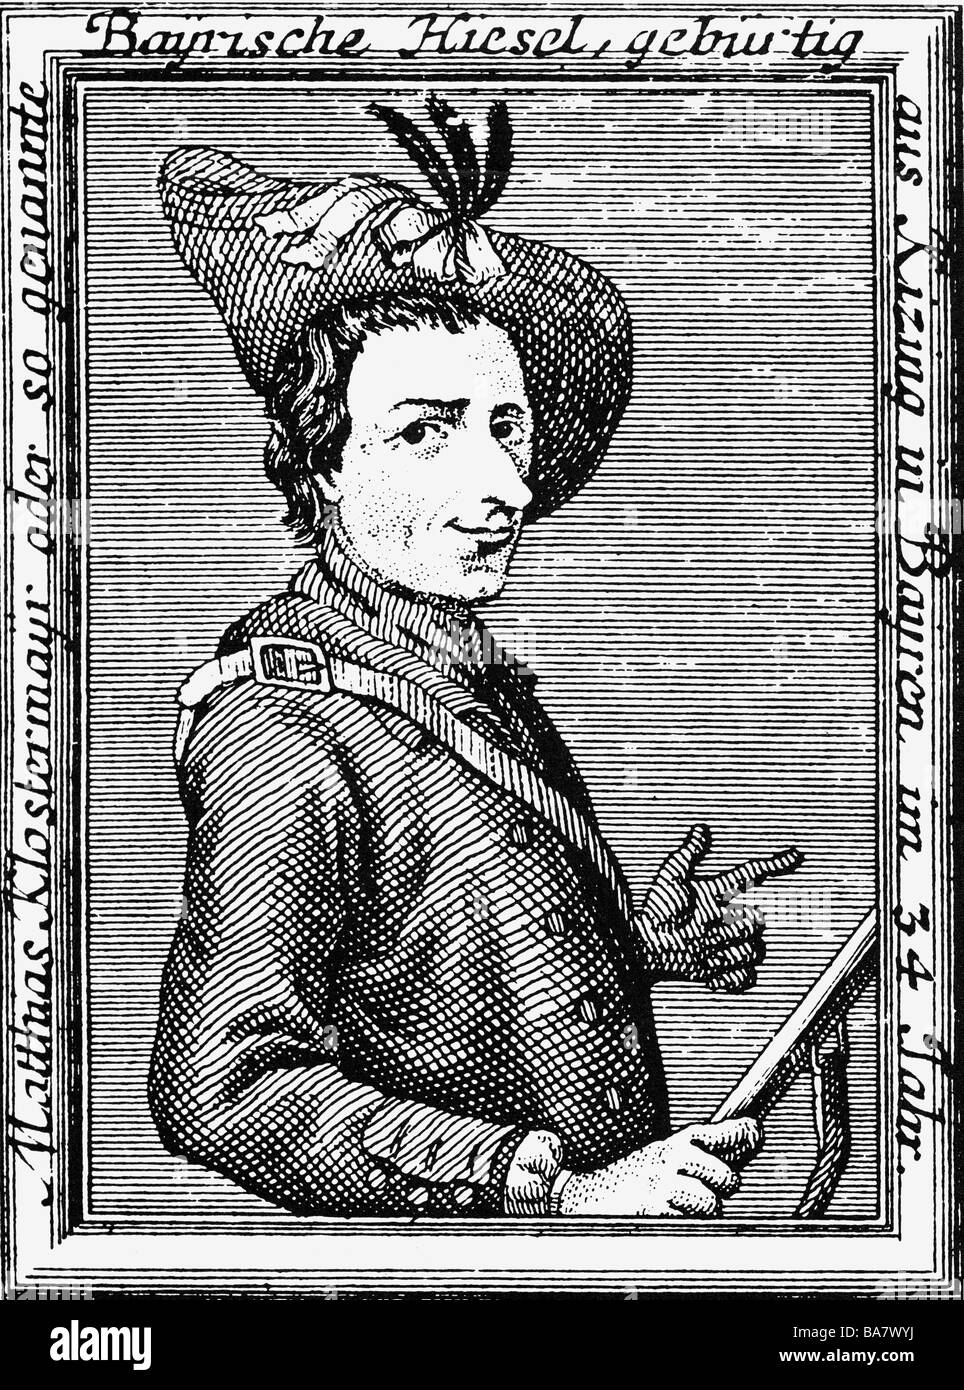 Matthias Klostermayr, 3.9.1738 - 6.9.1771, connu sous le nom de 'Bavarian Hiasl', hors-la-loi allemande, demi-longueur, gravure, Banque D'Images